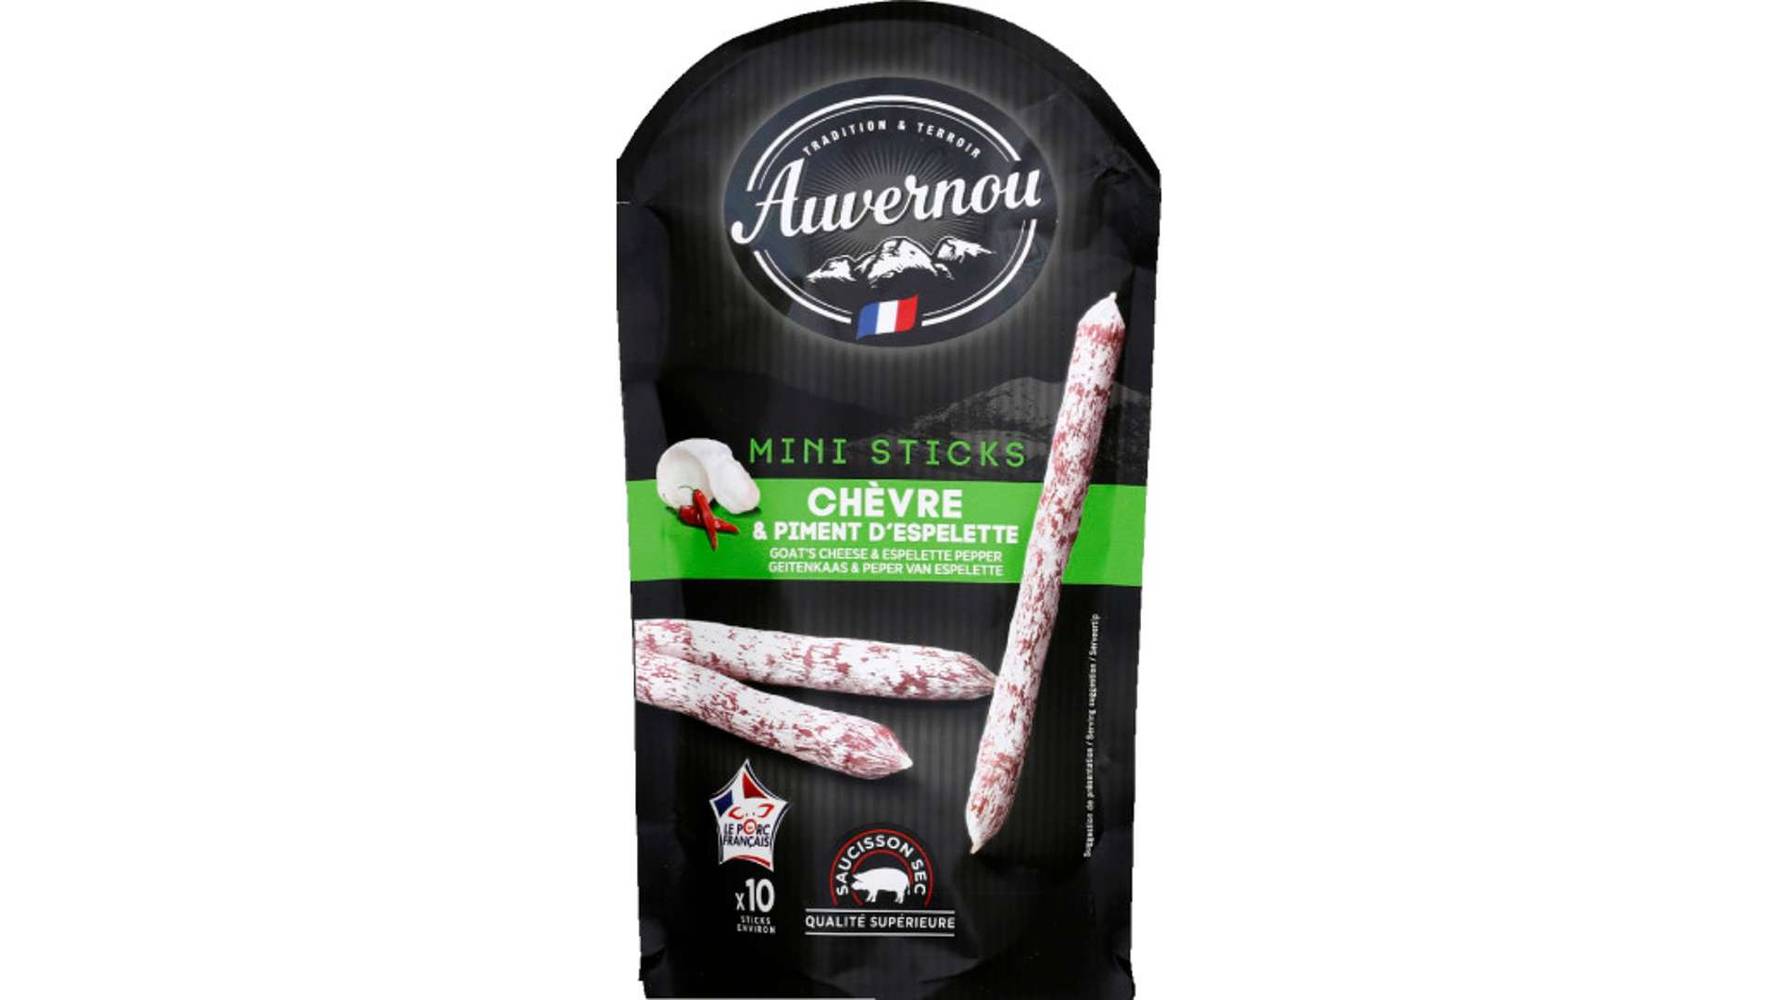 Auvernou - Mini sticks saucisson sec chèvre & piment d'espelette (10 pièces)